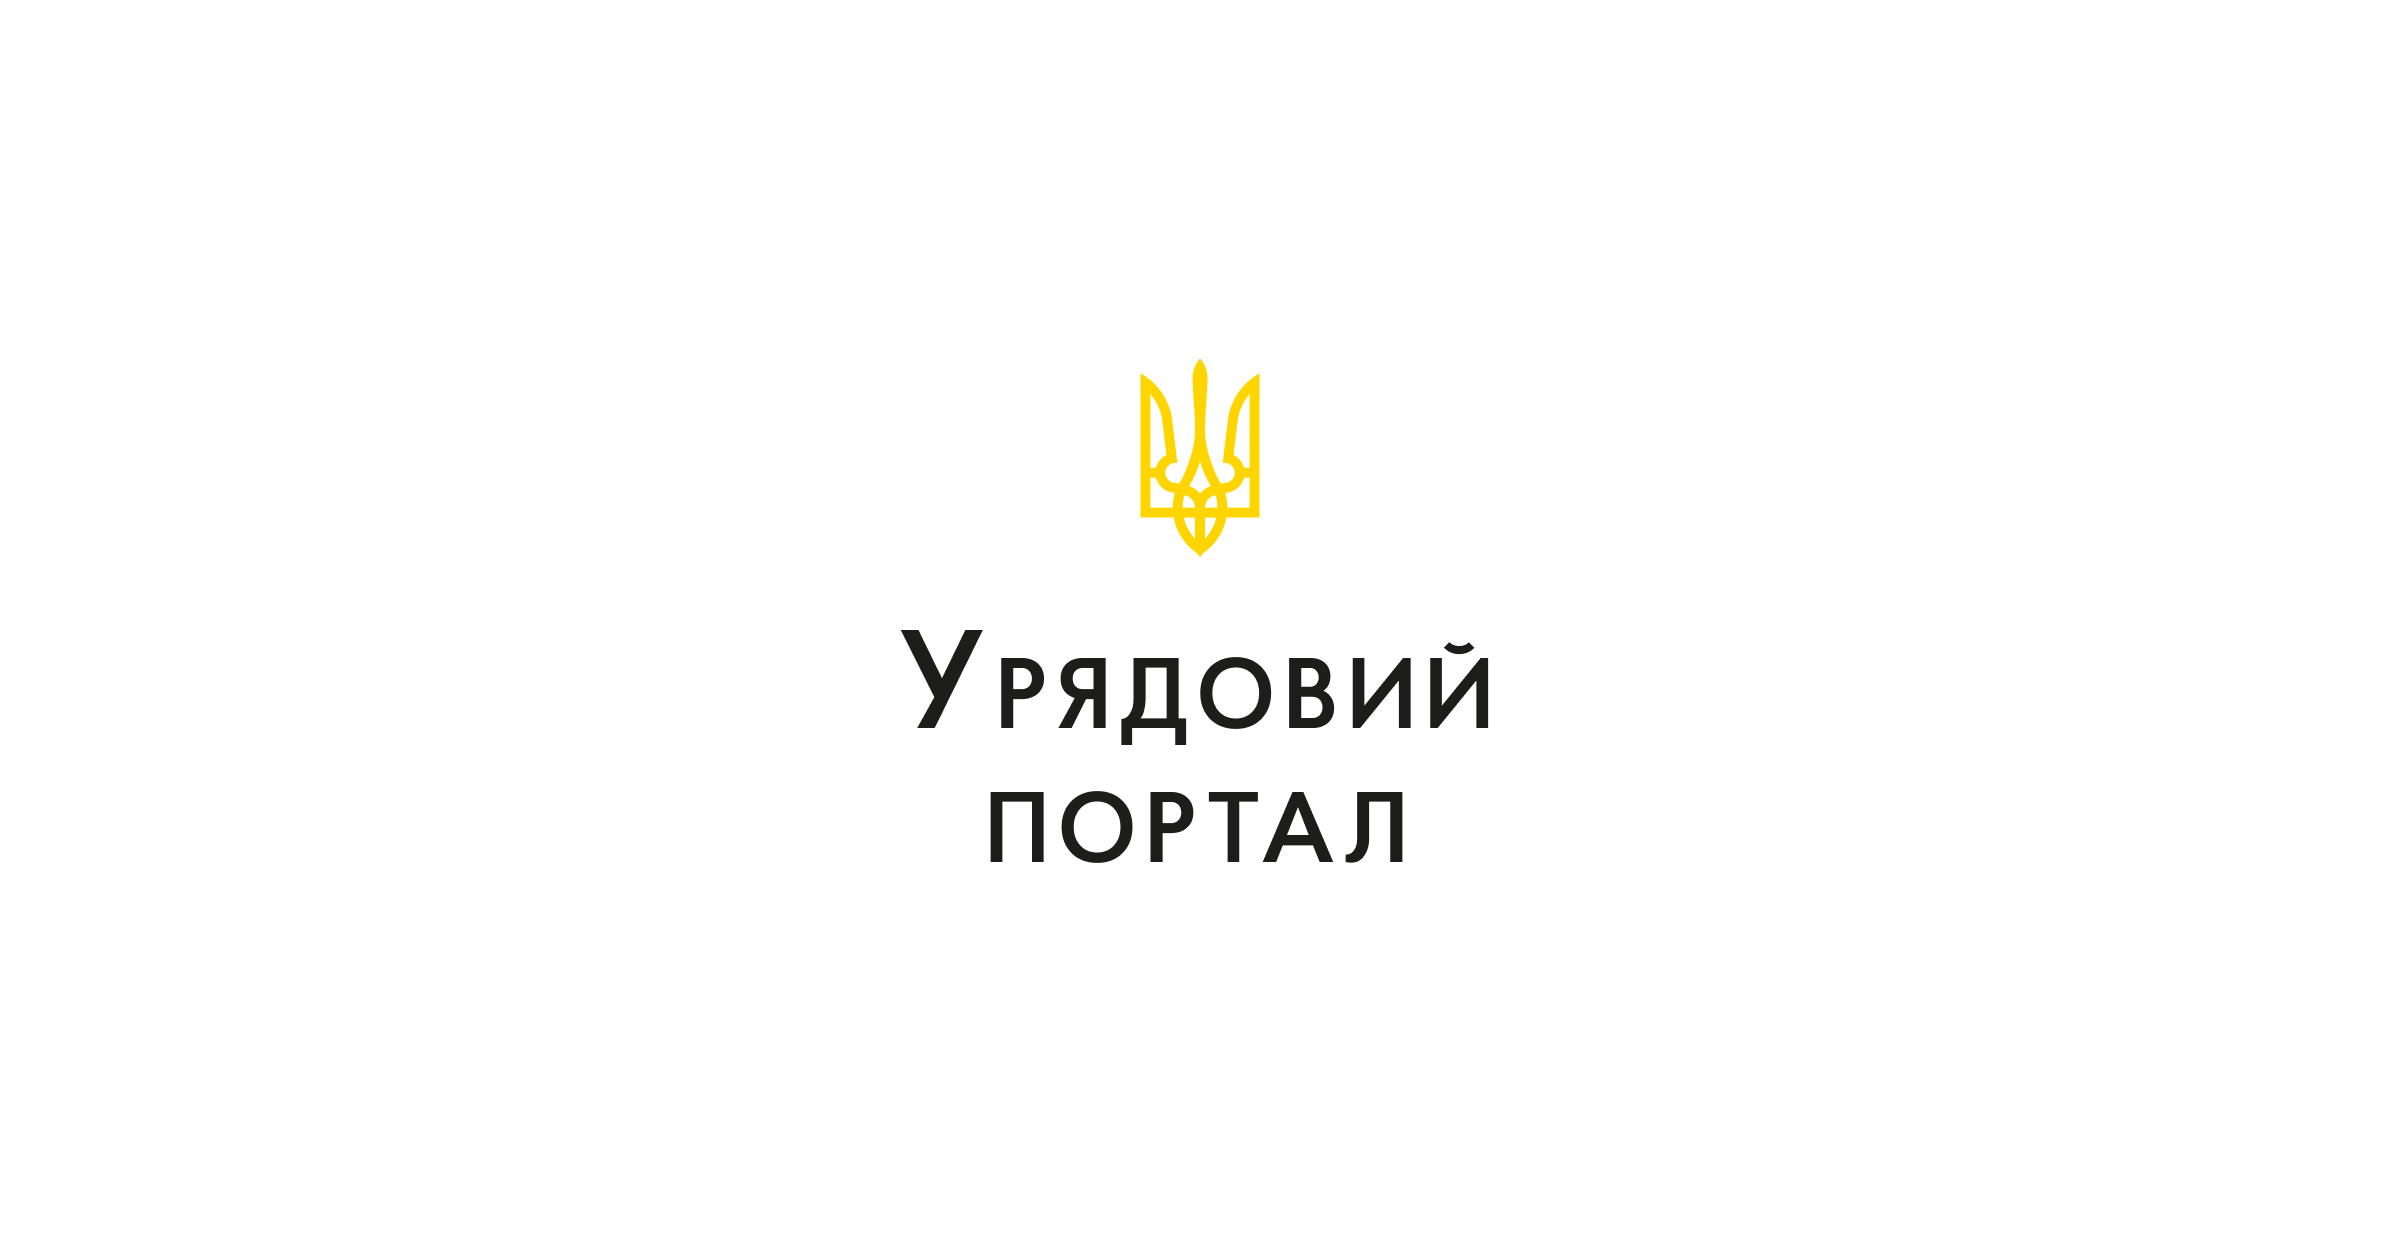 Життєстійкість для кожного українця: презентація концепції програми